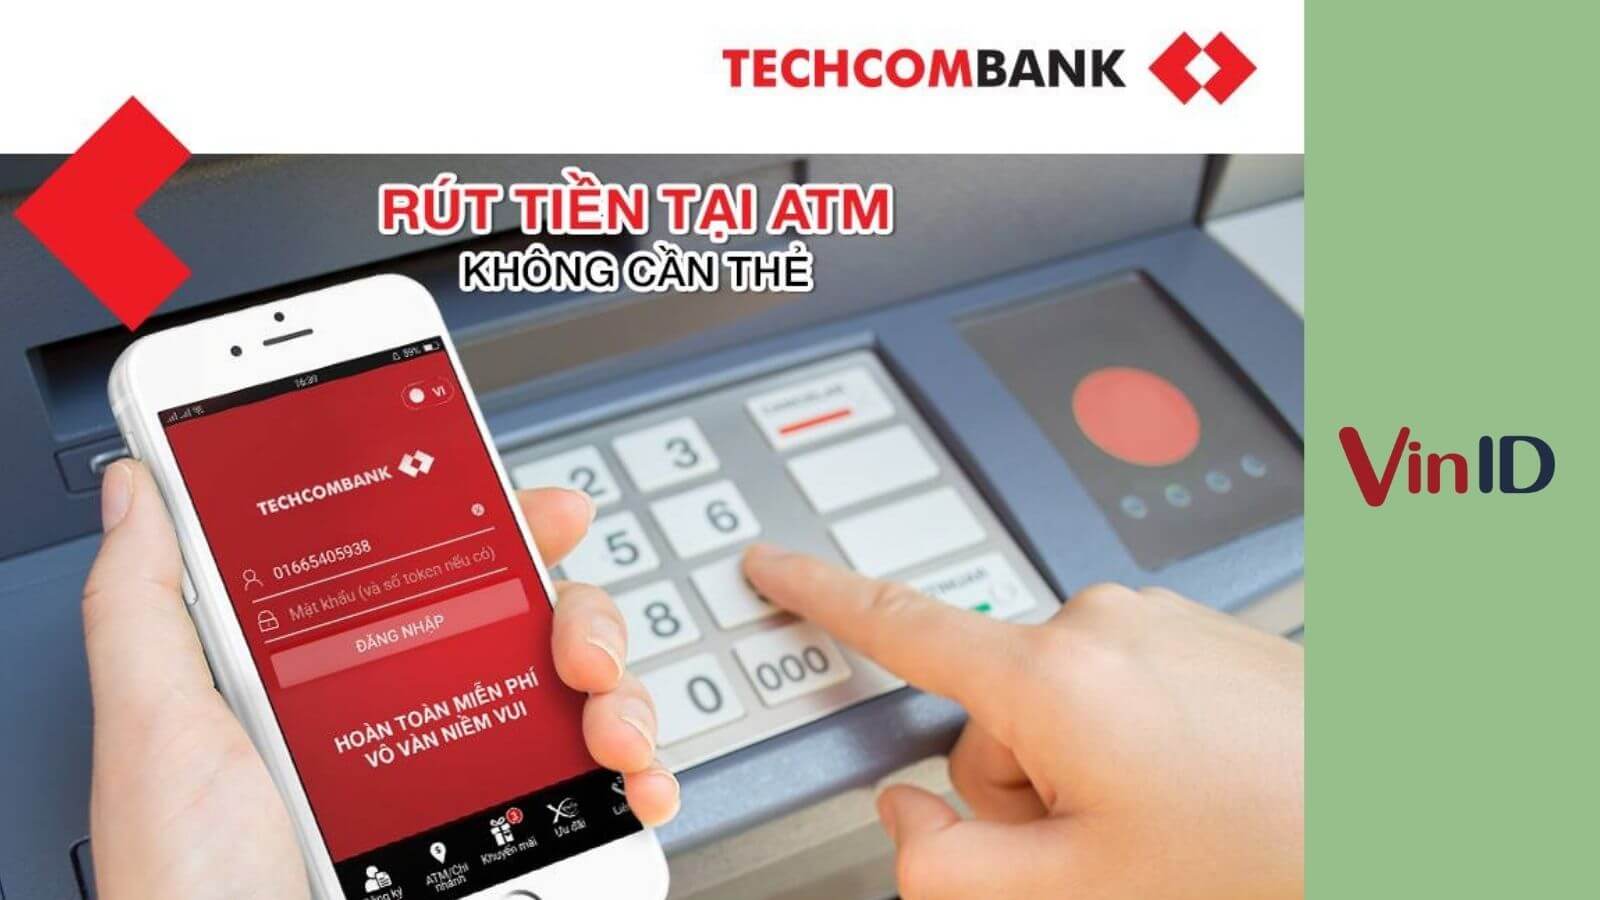 Cần phải đăng ký gì để rút tiền không cần thẻ tại ATM Techcombank?
